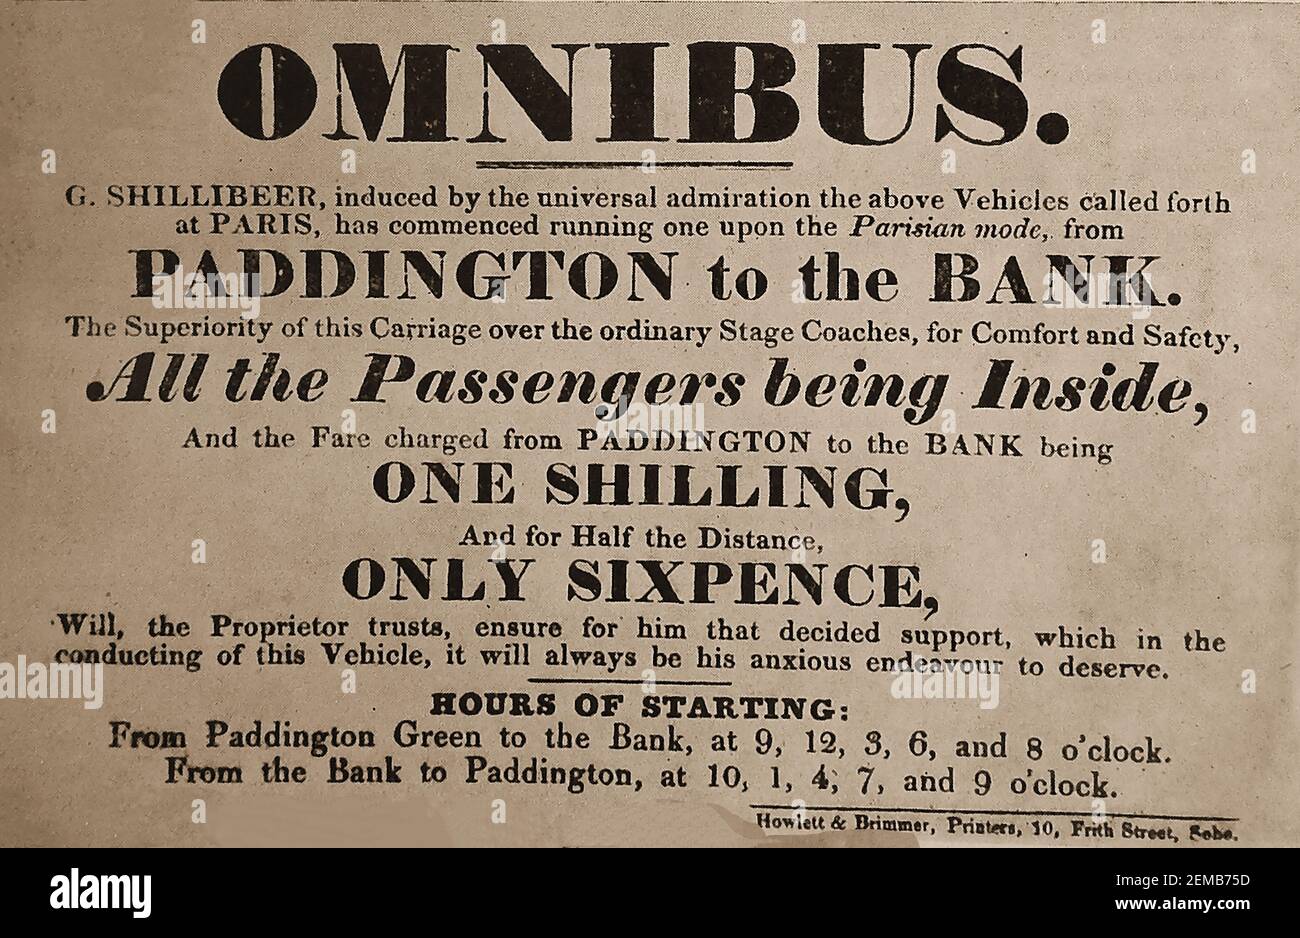 Ein Werbehandzettel für George Shilbeers ersten Londoner Bus (Omnibus), der von Paddington zur thd Thames Bank (einige sagen die Bank of England) fuhr. ---- Shilbeer (1797 – 1866) war ein englischer Kutschenbauer, der sich in Paris entschied, den Omnibus-Dienst dort in seiner Heimat London zu kopieren und in Großbritannien Pionierarbeit für diese Art öffentlicher Verkehrsmittel zu leisten. Stockfoto